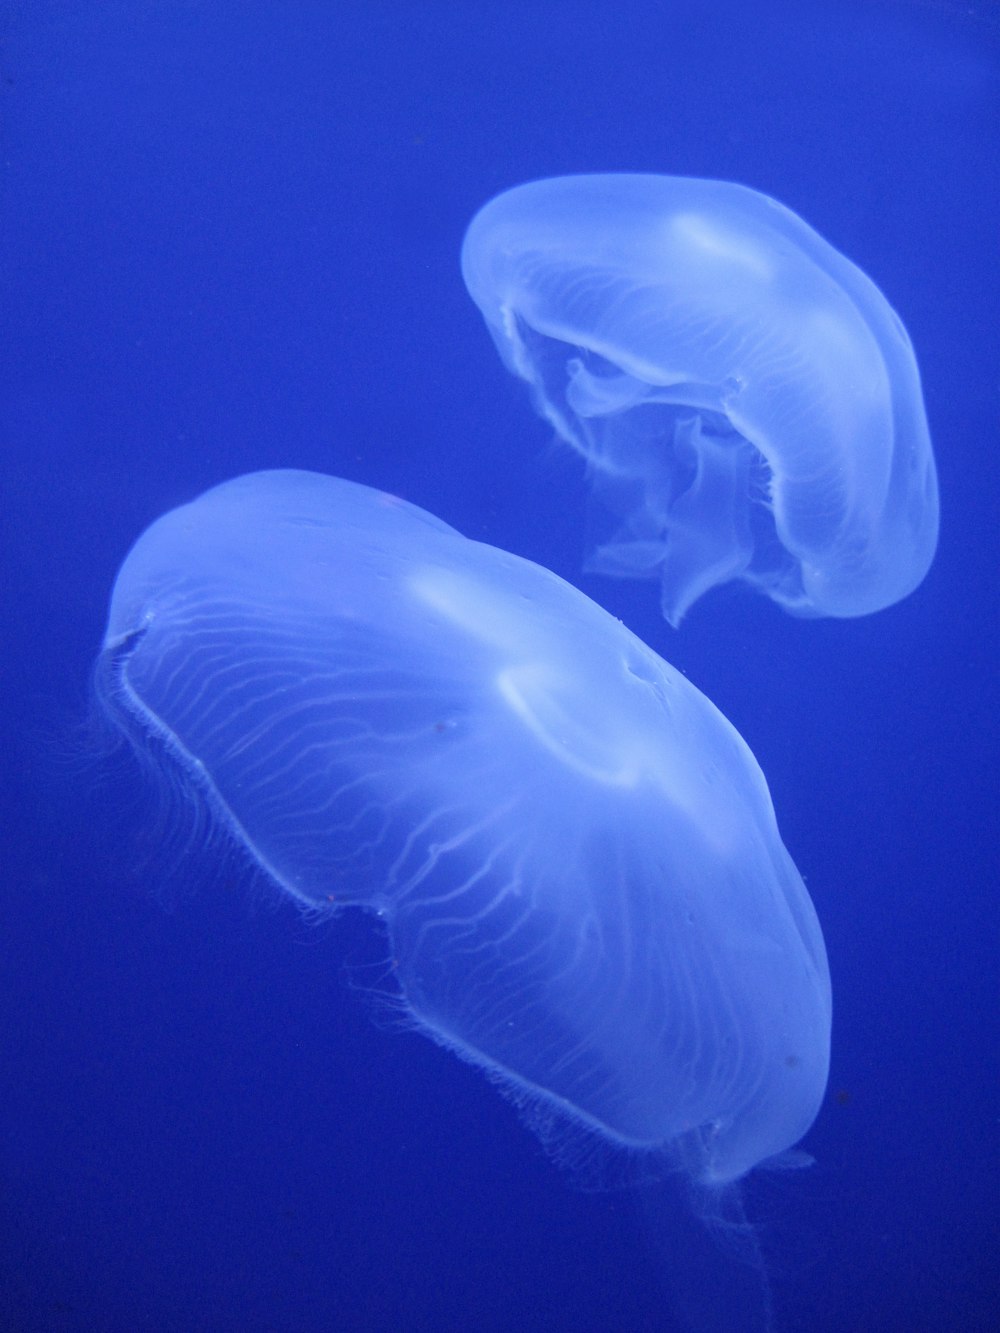 Dos medusas nadando en el agua azul